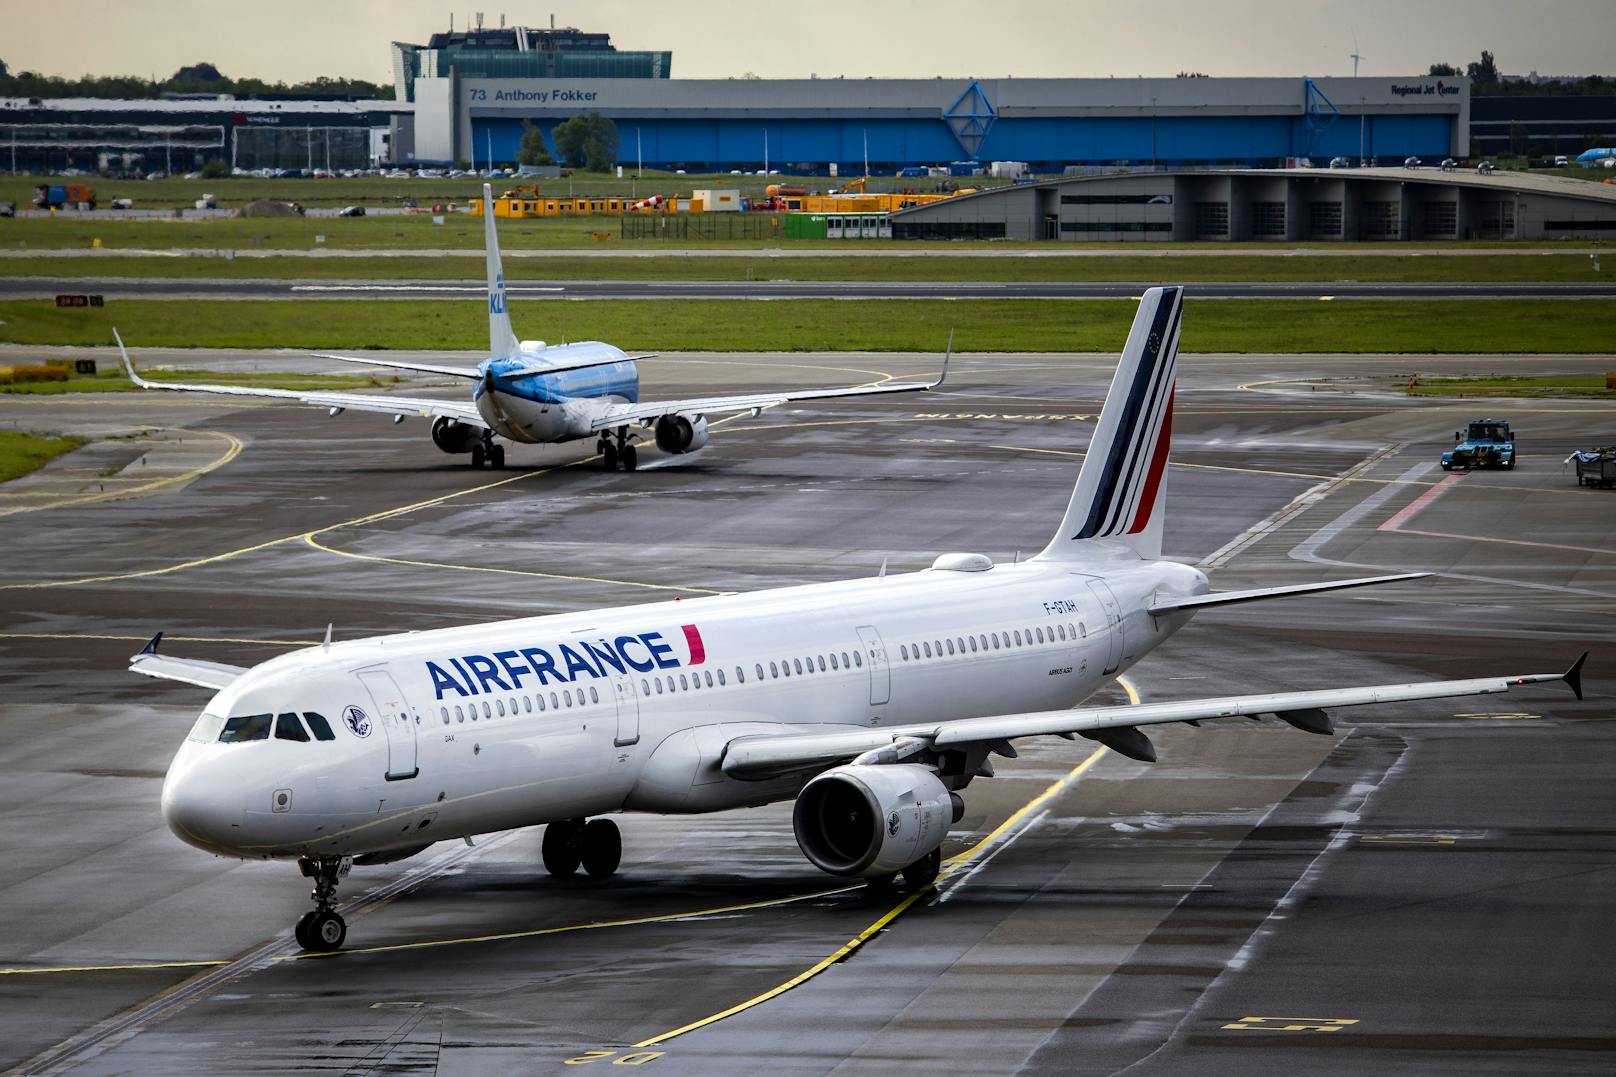 Piloten prügeln sich auf Flug nach Paris im Cockpit